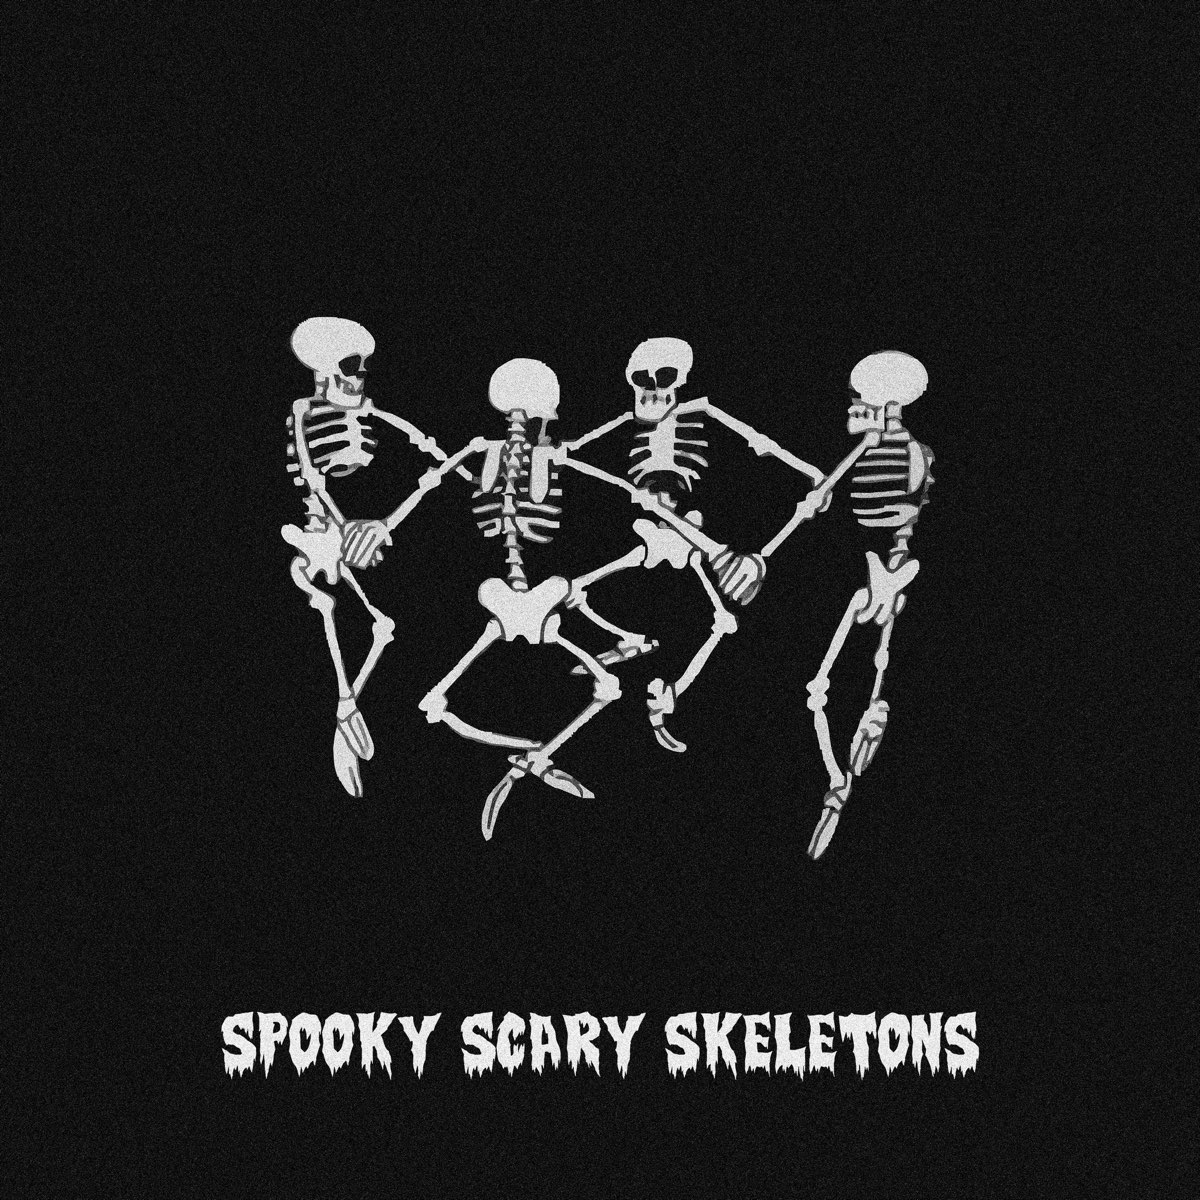 Scary skeletons remix. Скелет на черном фоне. Обои на телефон скелет. Пляшущие скелеты на черном фоне\. Скелеты танцуют на черном фоне.